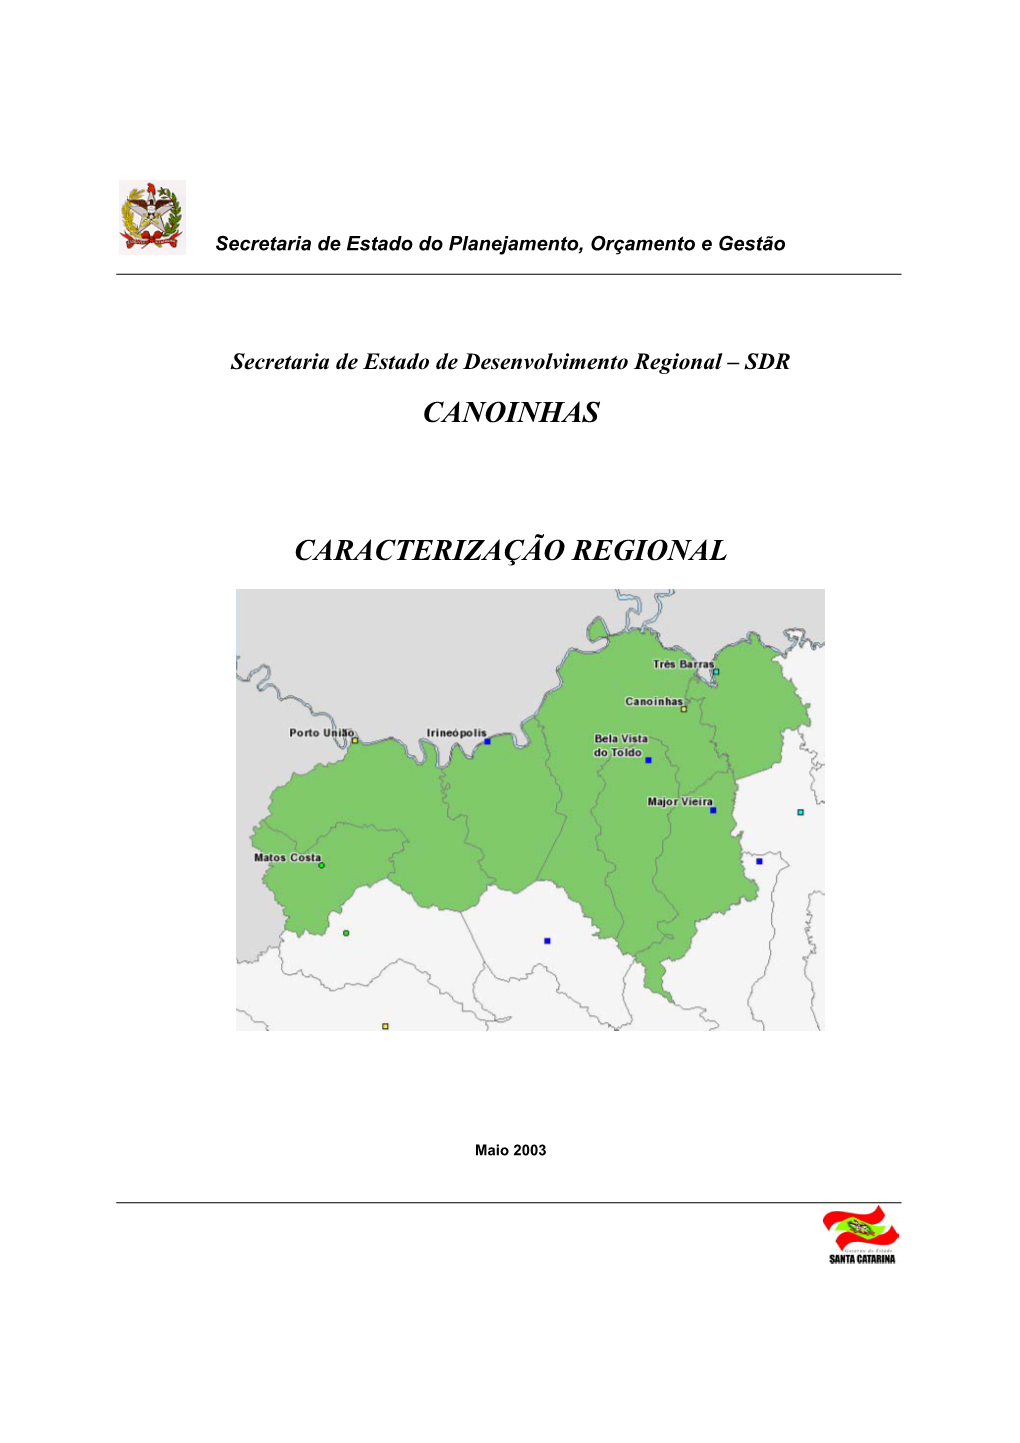 Canoinhas Caracterização Regional